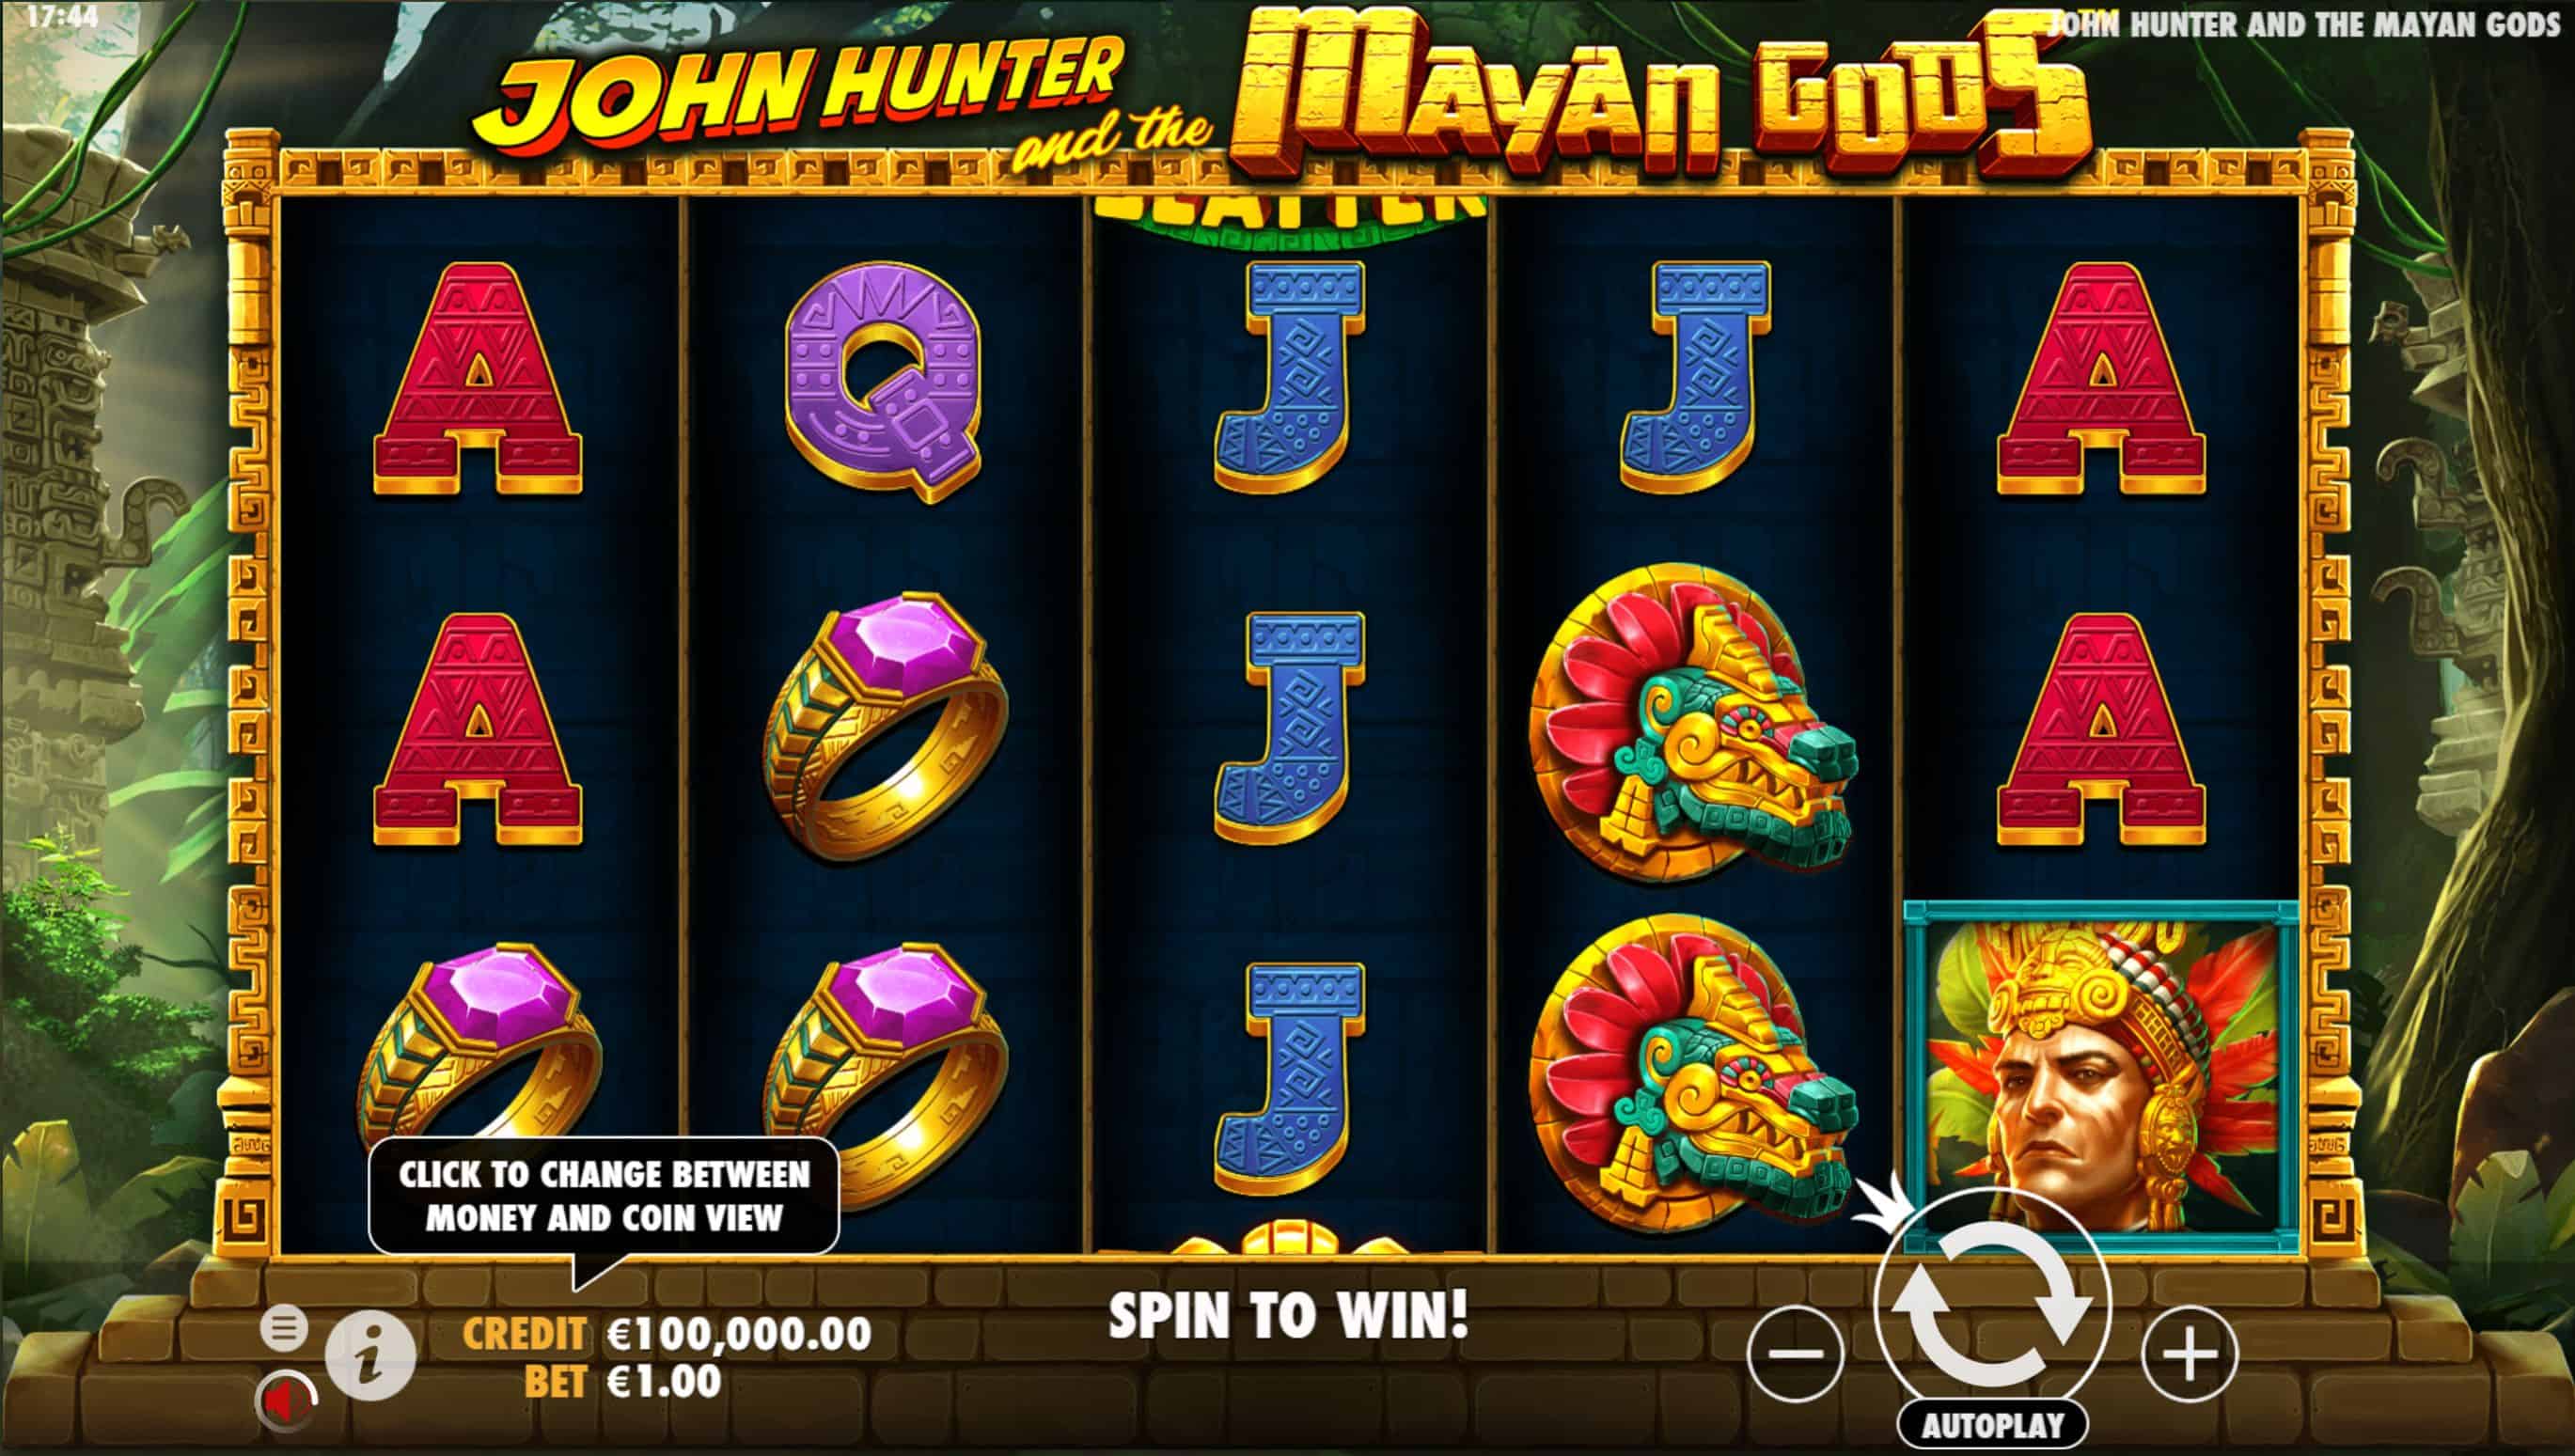 John Hunter and the Mayan Gods Slot Game Free Play at Casino Ireland 01